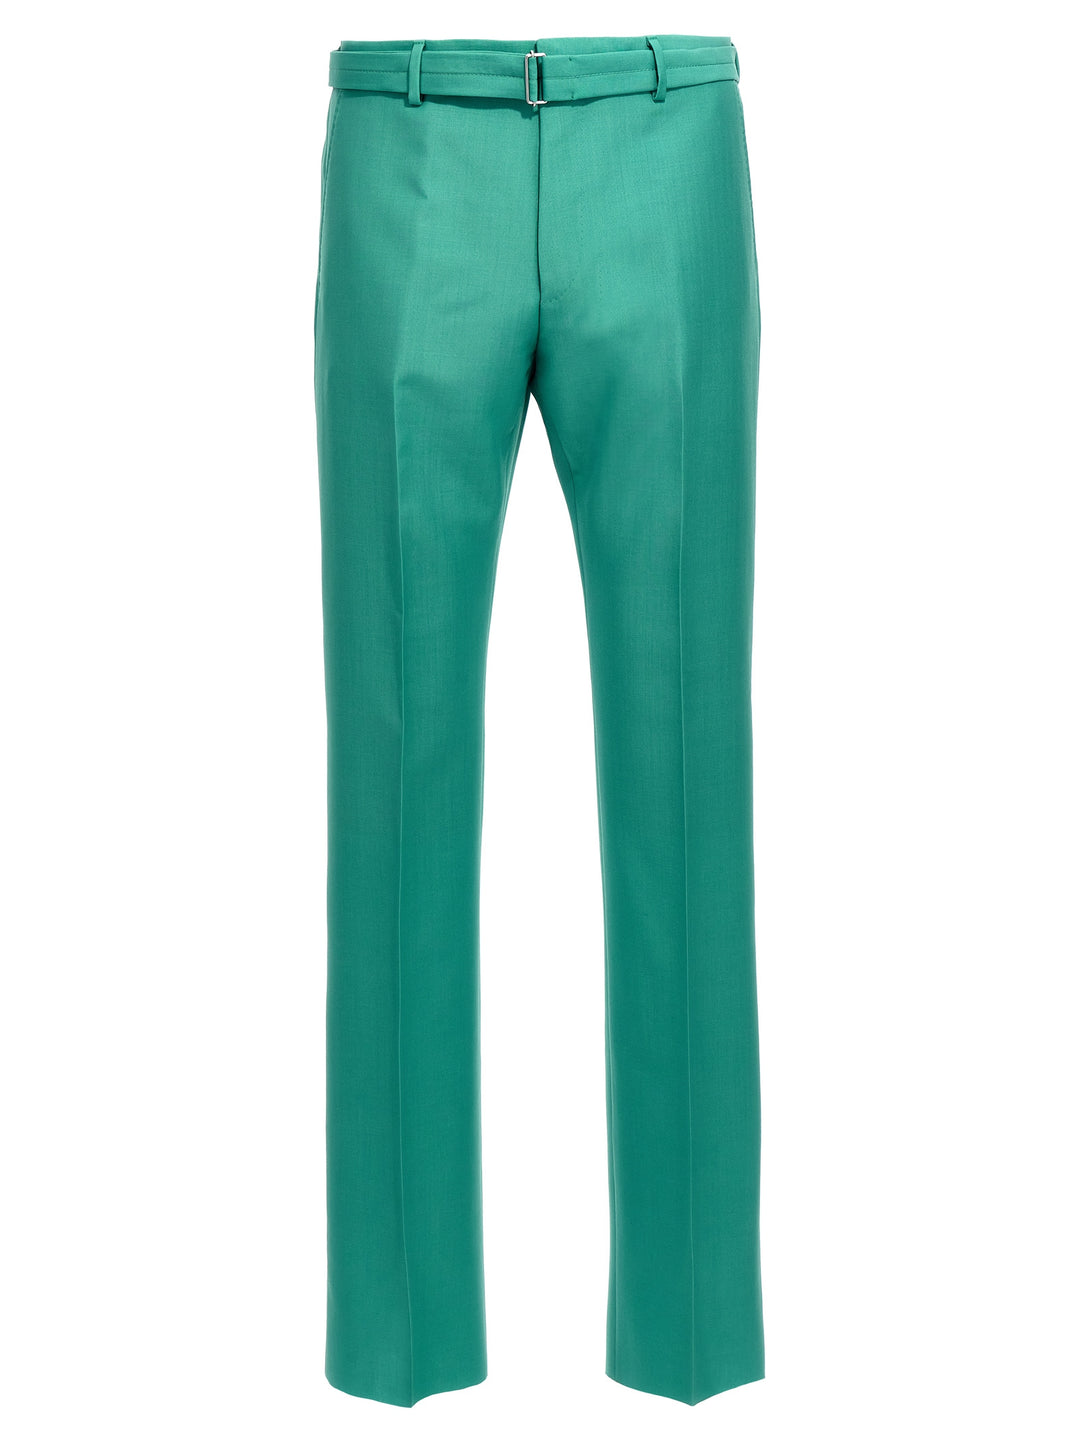 Belted Pantaloni Verde